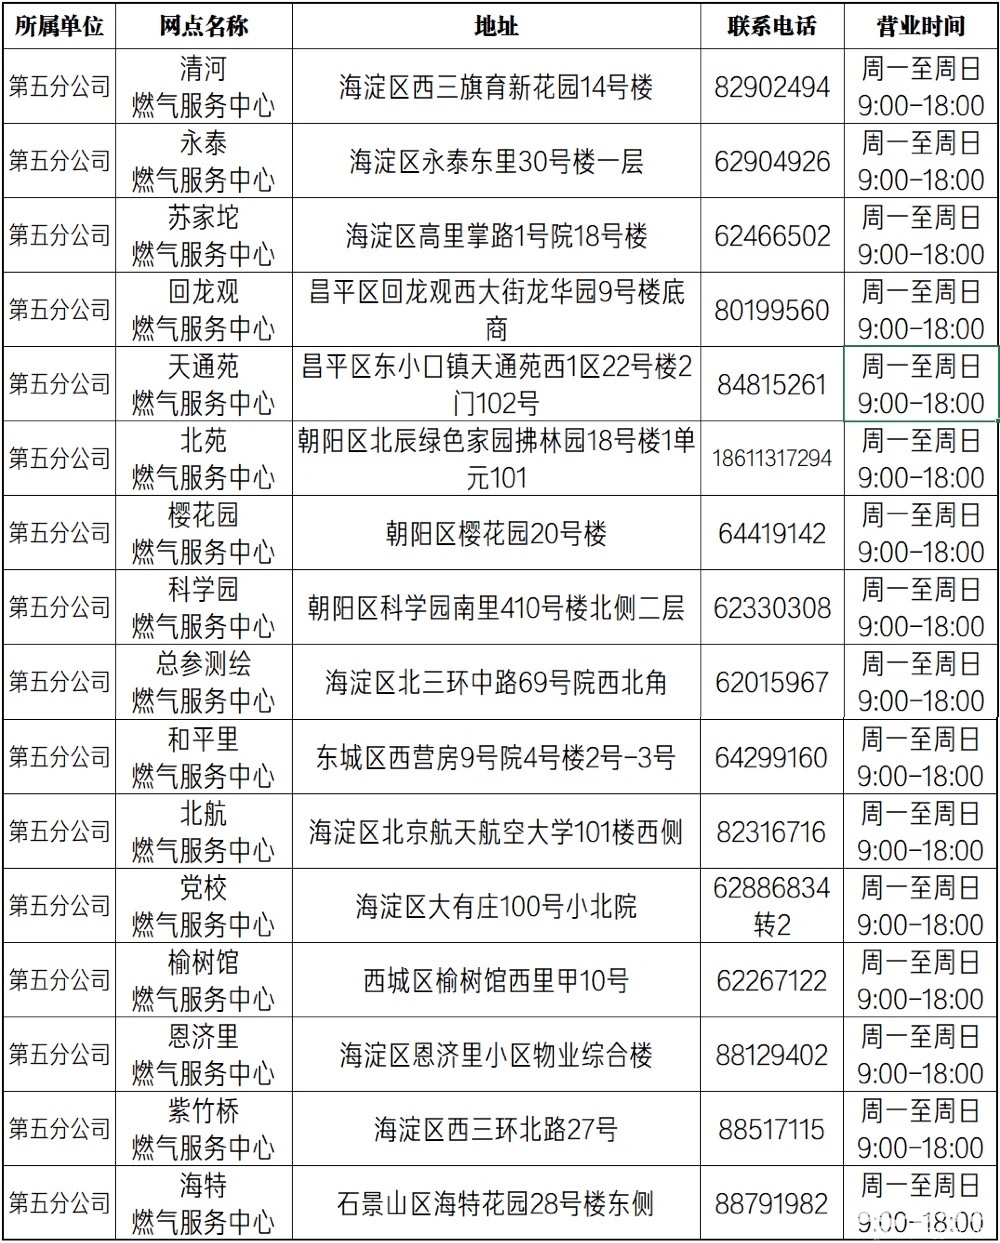 北京自采暖补贴表底数申报开始，下月14日前未申报将无法领取补贴[墙根网]